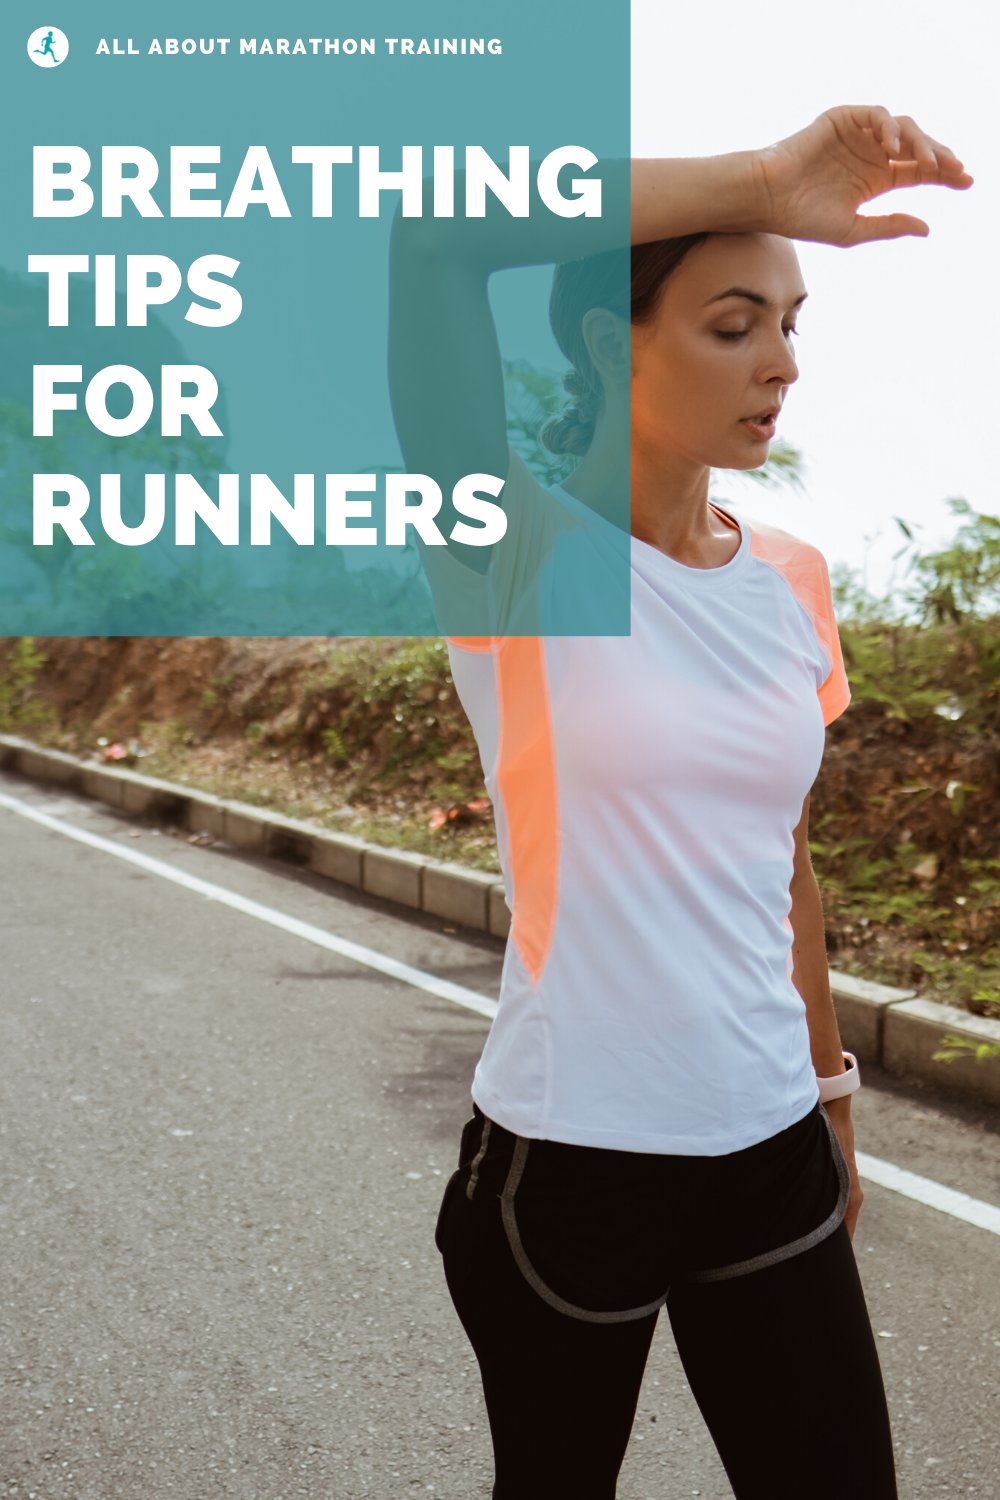 Breathing tips for runners